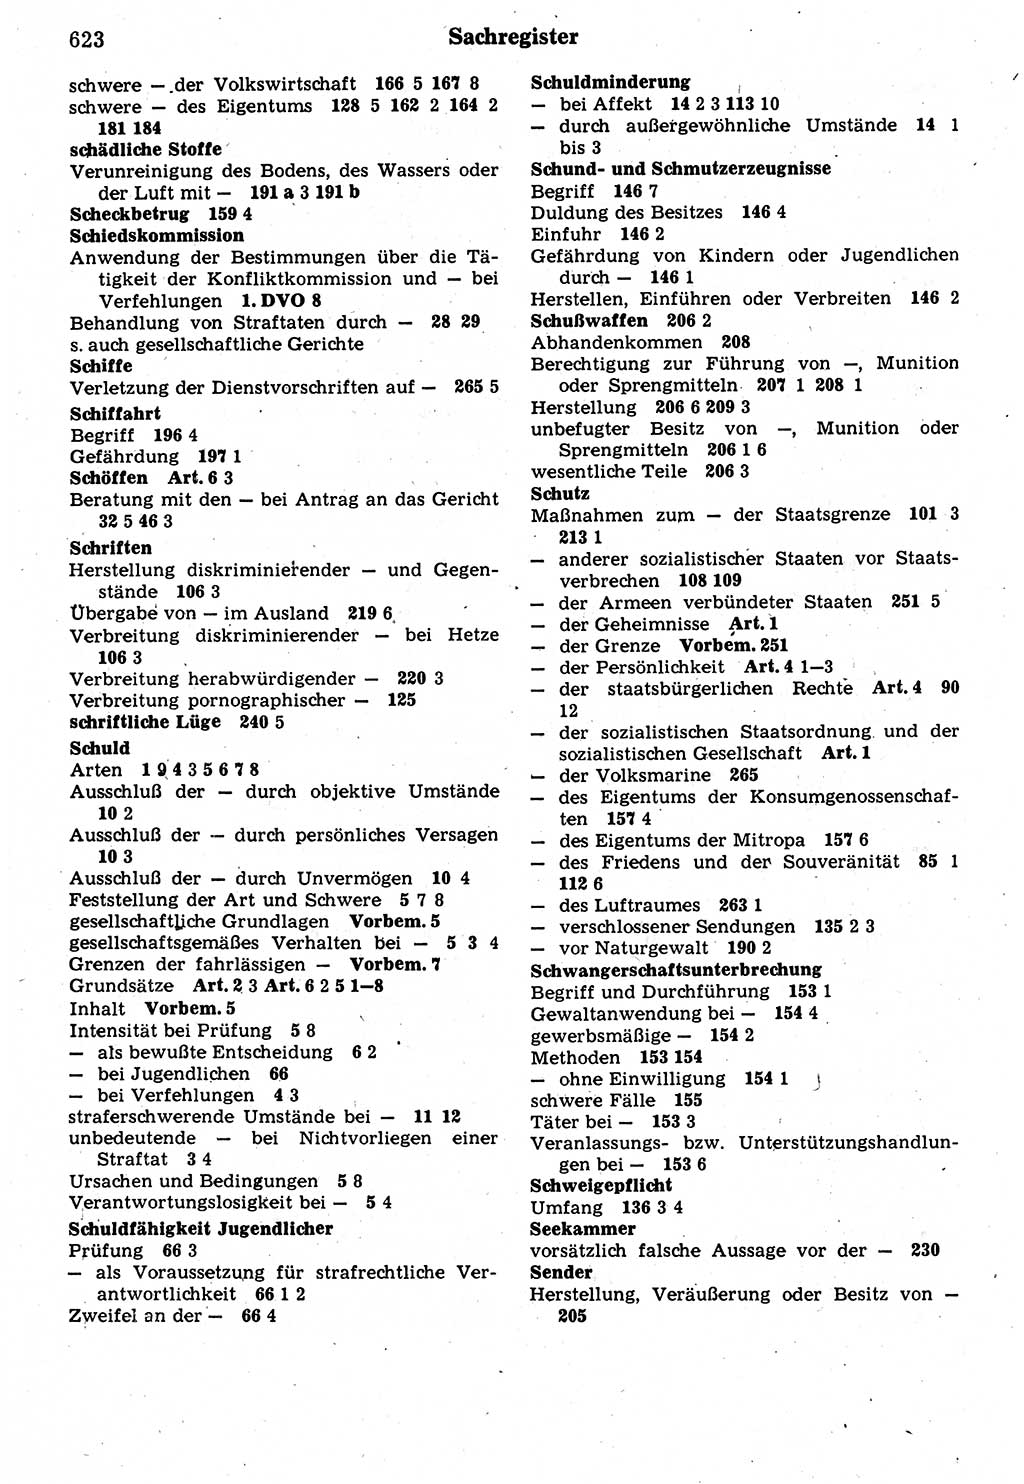 Strafrecht der Deutschen Demokratischen Republik (DDR), Kommentar zum Strafgesetzbuch (StGB) 1987, Seite 623 (Strafr. DDR Komm. StGB 1987, S. 623)